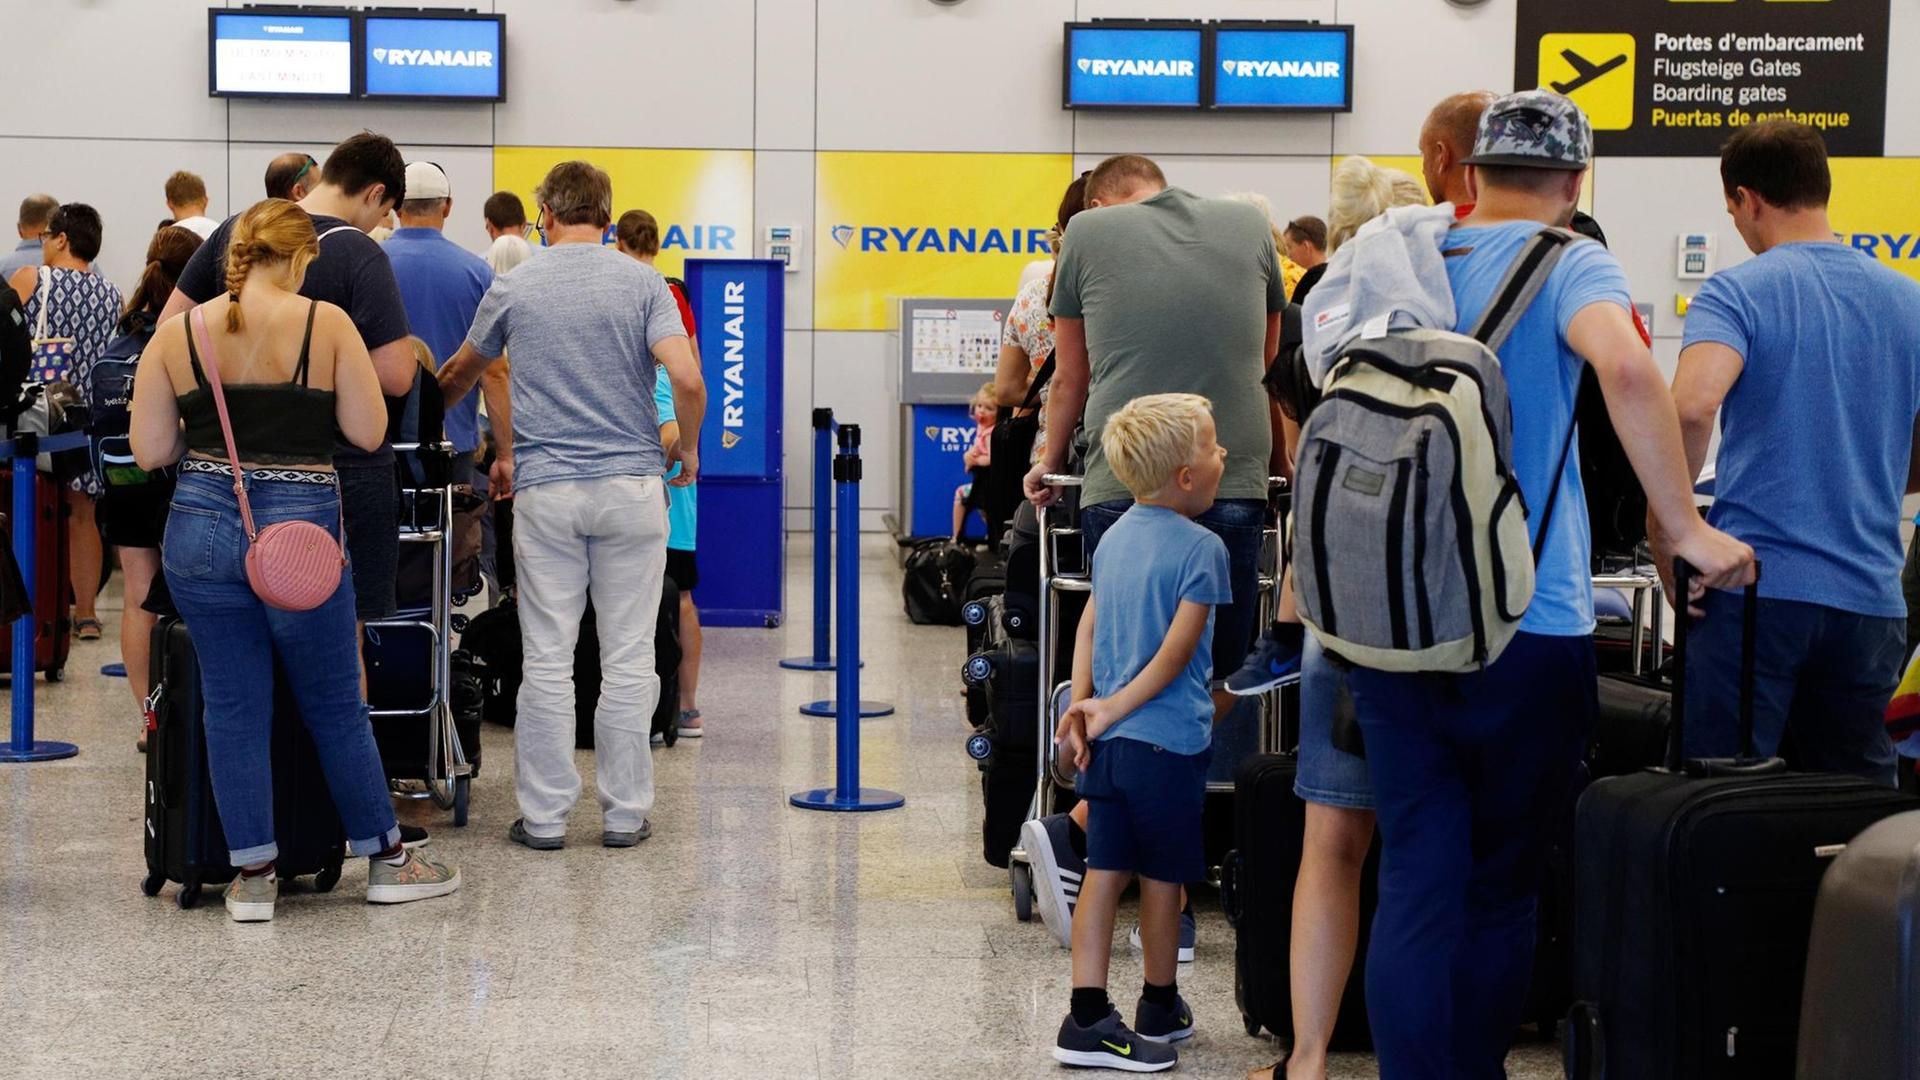 25.07.2018, Spanien, Mallorca, Palma: Passagiere stehen am Ryanair Check-In Schalter am Flughafen Palma de Mallorca an. Der Beginn eines zweitägigen Streiks des Kabinenpersonals beim Billigflieger Ryanair hat bei unzähligen Reisenden in mehreren europäischen Ländern großen Unmut ausgelöst. Die meisten Ausfälle gab es in Spanien, wo Ryanair 200 Flüge strich - ein knappes Viertel aller Verbindungen. Allein auf Mallorca fielen am 25.07.2018 wegen des Streiks 72 Flüge aus, darunter zehn der vierzig Verbindungen nach Deutschland, wie ein Flughafensprecher sagte.